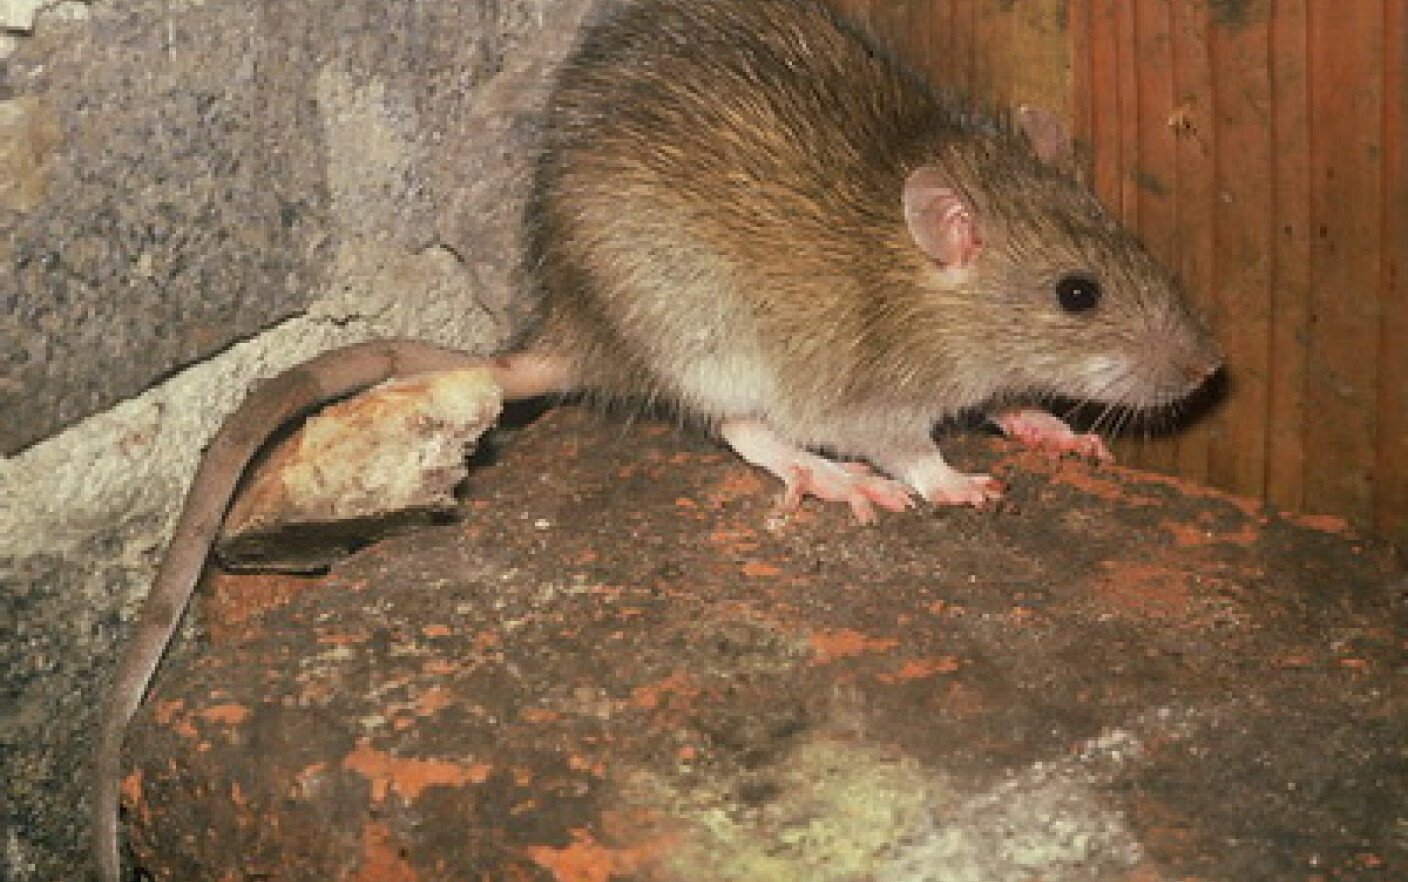  Ieşean ajuns la spital în stare groaznică: mâncat de şobolani pe picioare. Cât de periculoase pot fi aceste animale?